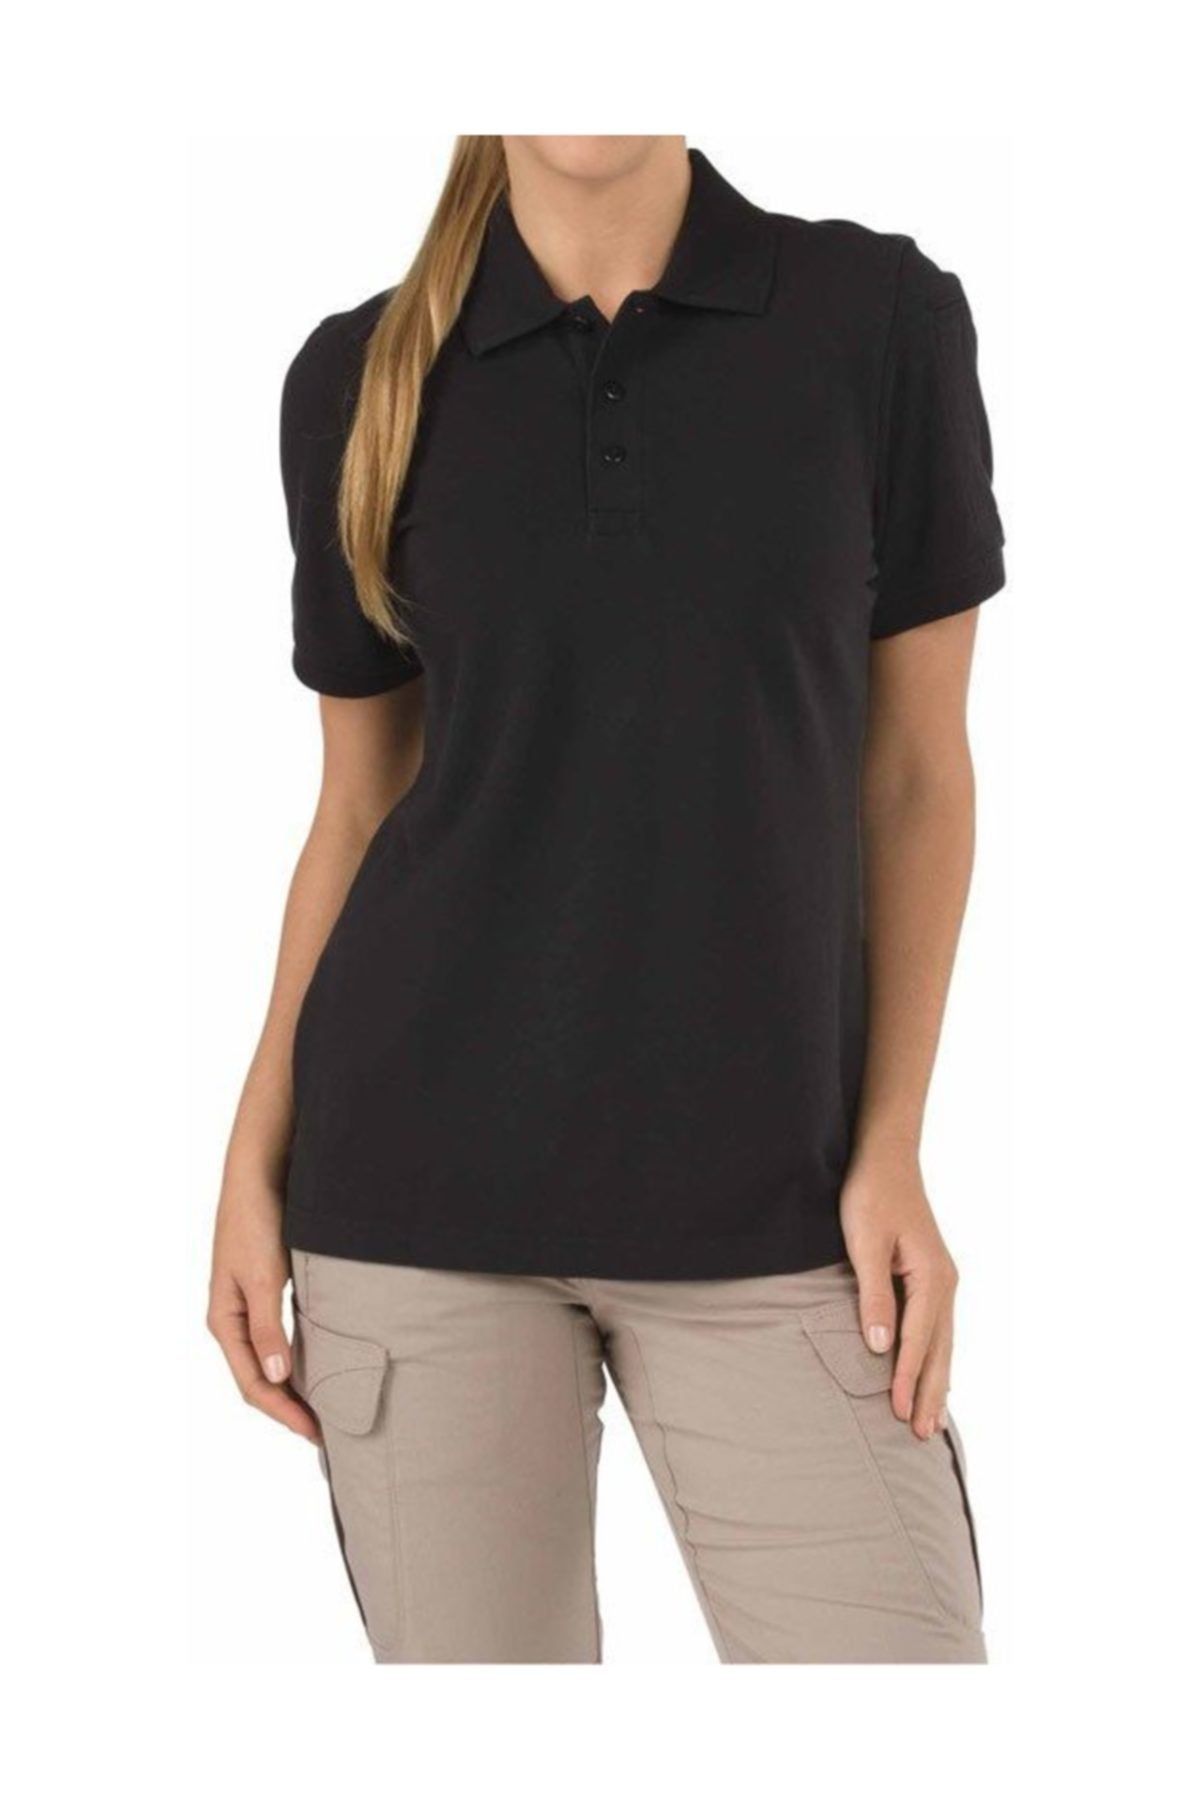 5.11 Tactical Polo Kadın Siyah T-shirt